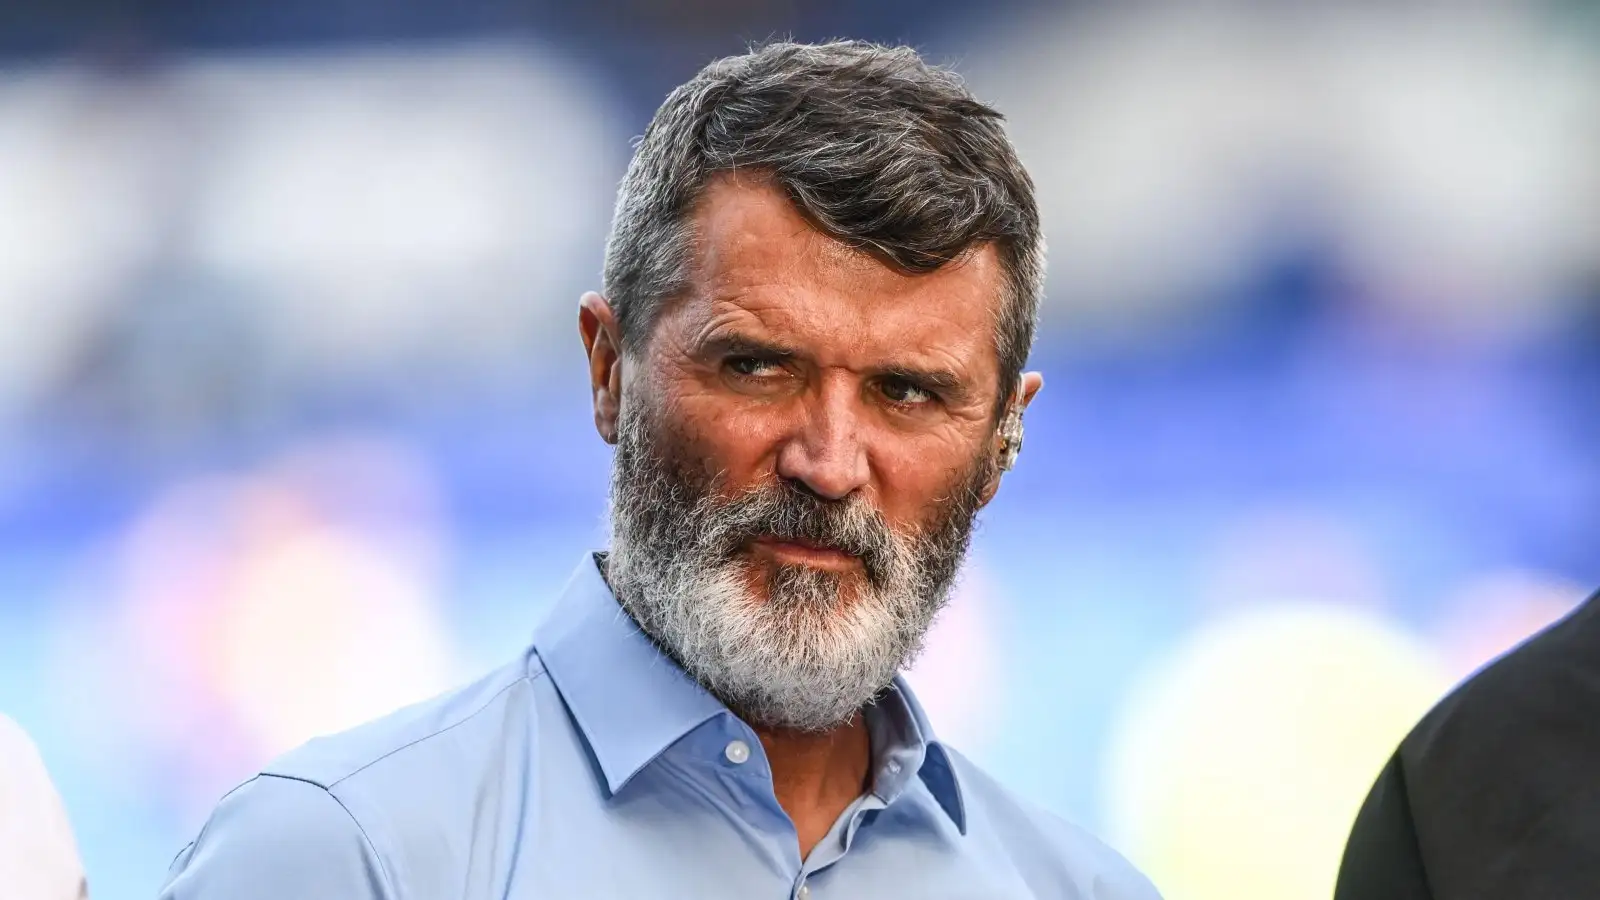 Guy Utd legend Roy Keane